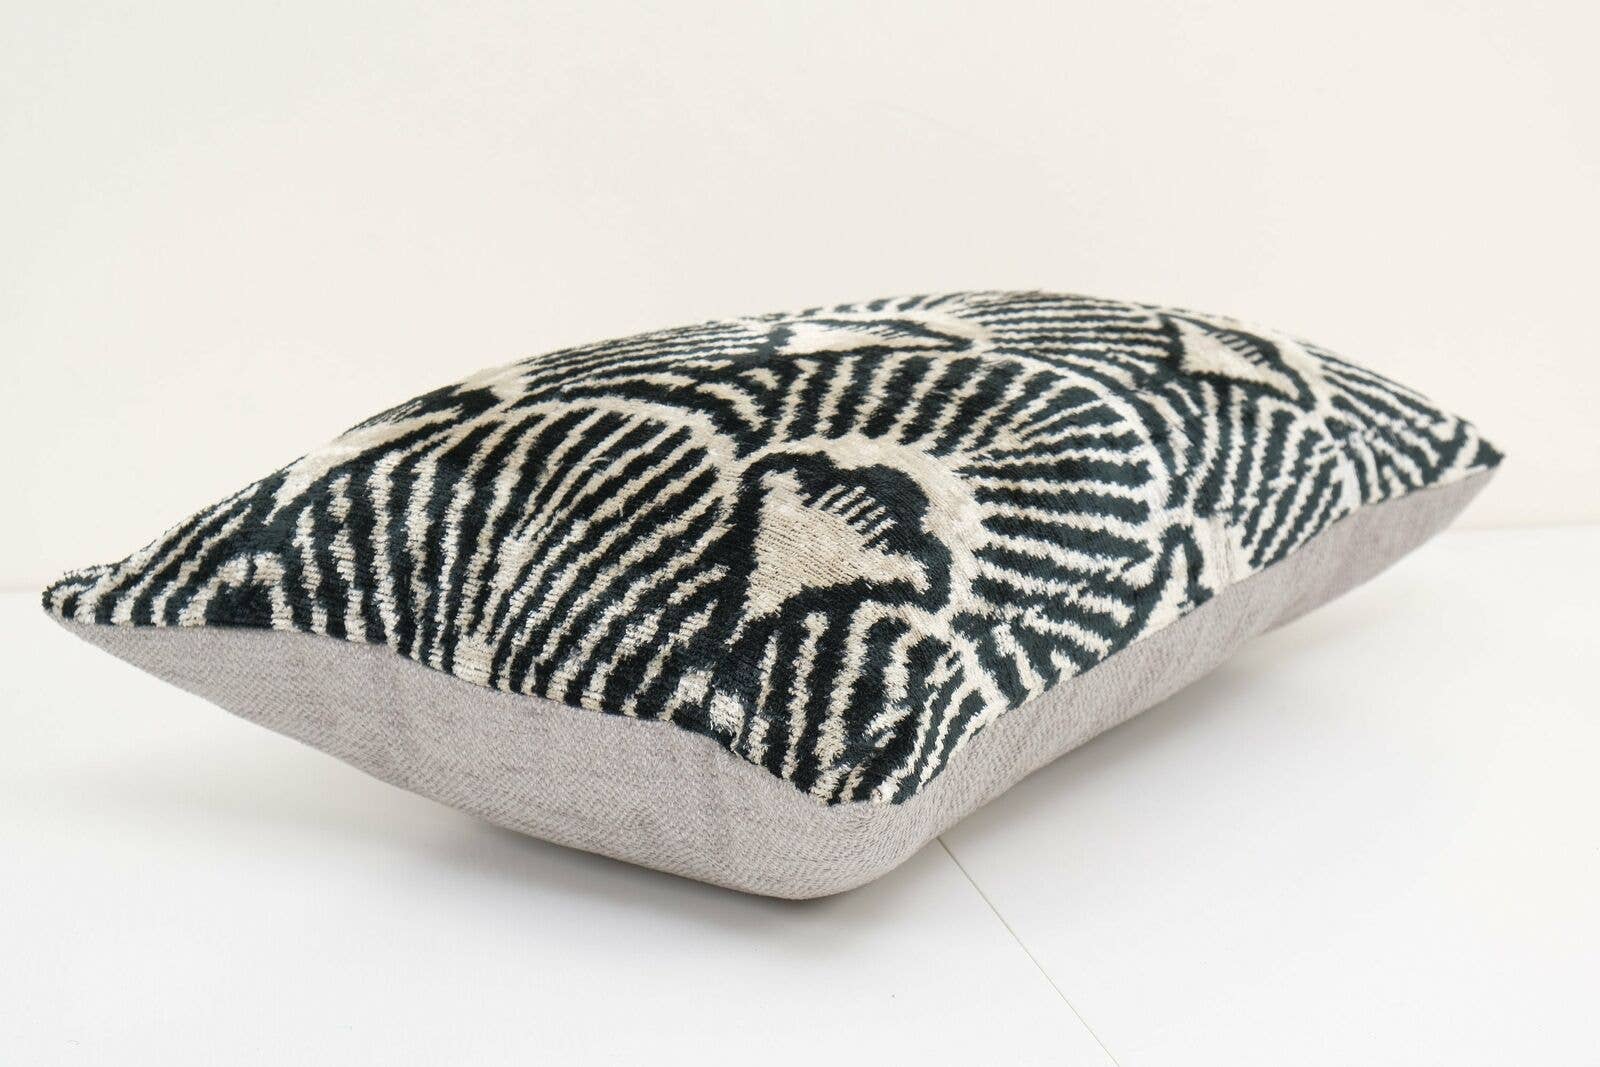 Geometric Design Ikat Velvet Pillow - Black Ethnic Silk